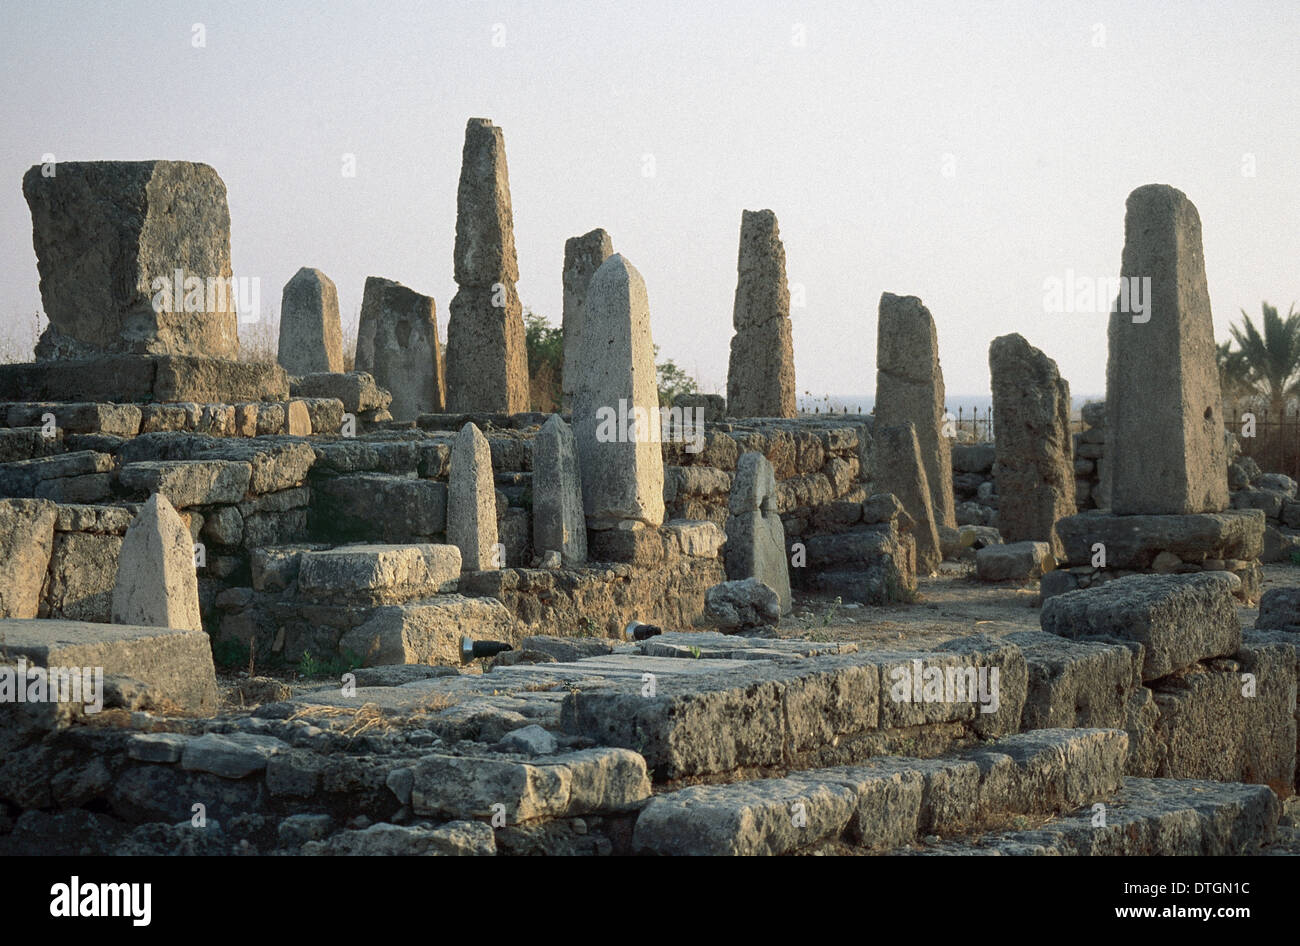 Le Liban. Byblos. Temple de les obélisques. Temple phénicien construit vers 1600 av. J.-C. Site du patrimoine mondial. Banque D'Images